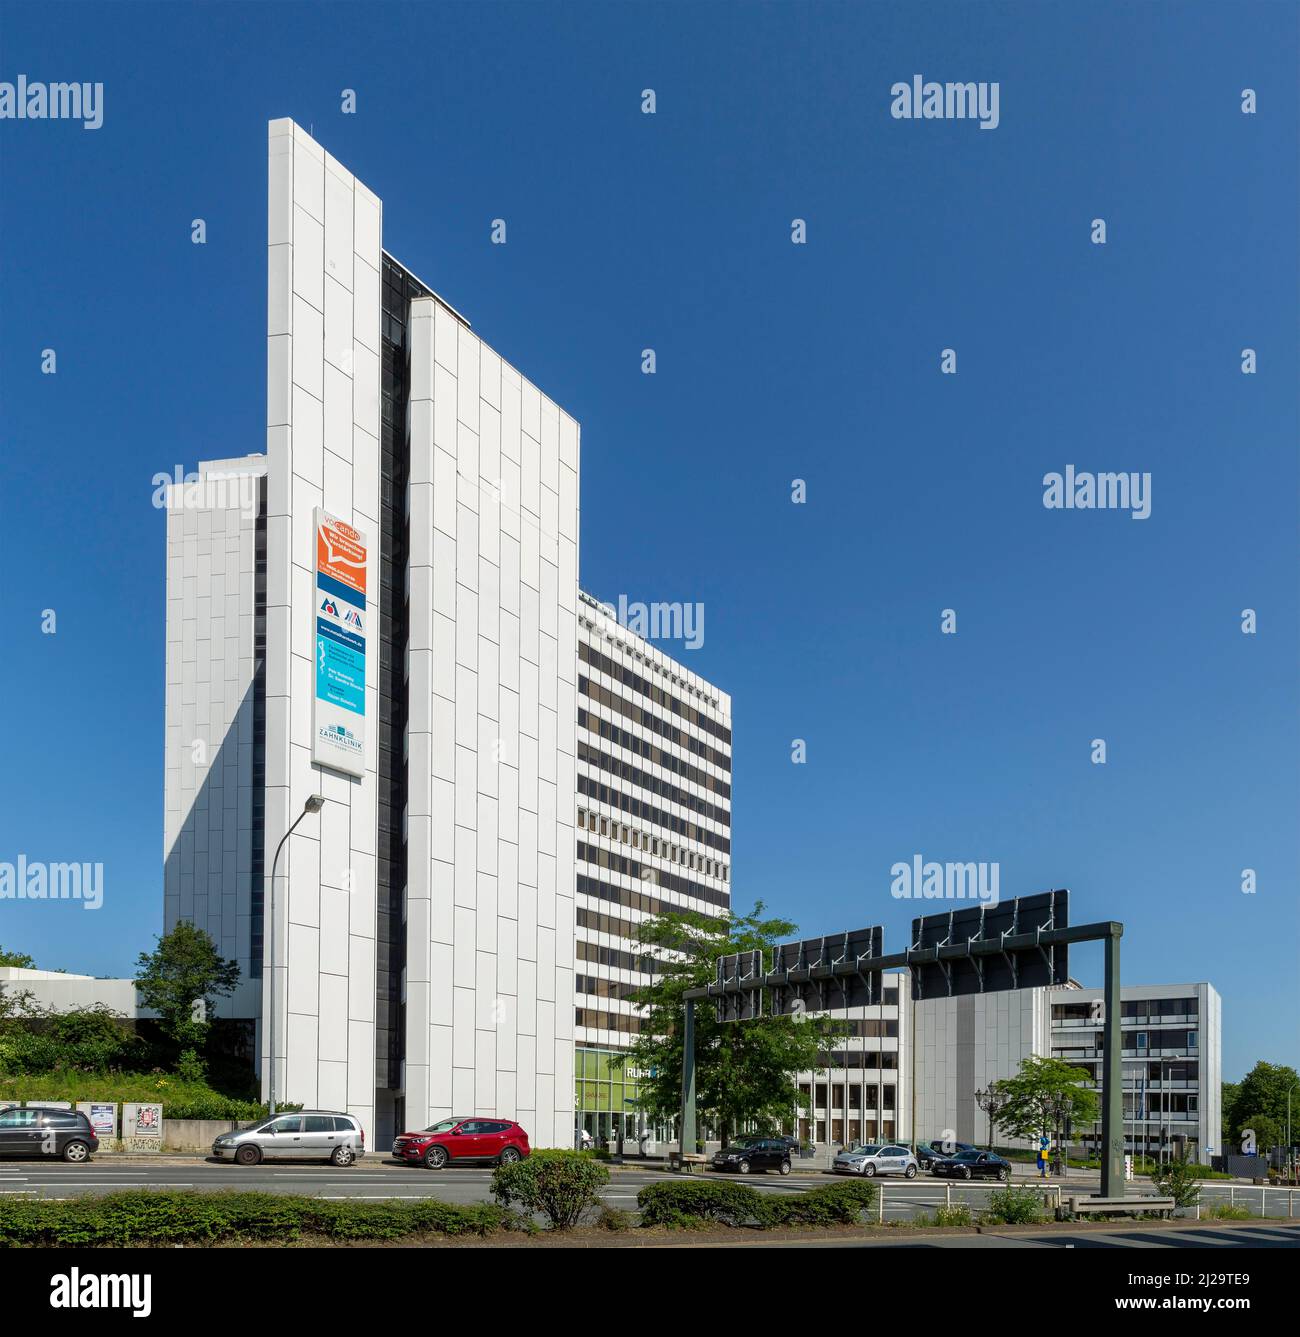 Ehemaliges E. AM Ruhrgas-Hauptsitz, heute Ruhrturm-Bürogebäude mit Hotel- und Konferenzzentrum, Essen, Ruhrgebiet, Nordrhein-Westfalen, Deutschland Stockfoto